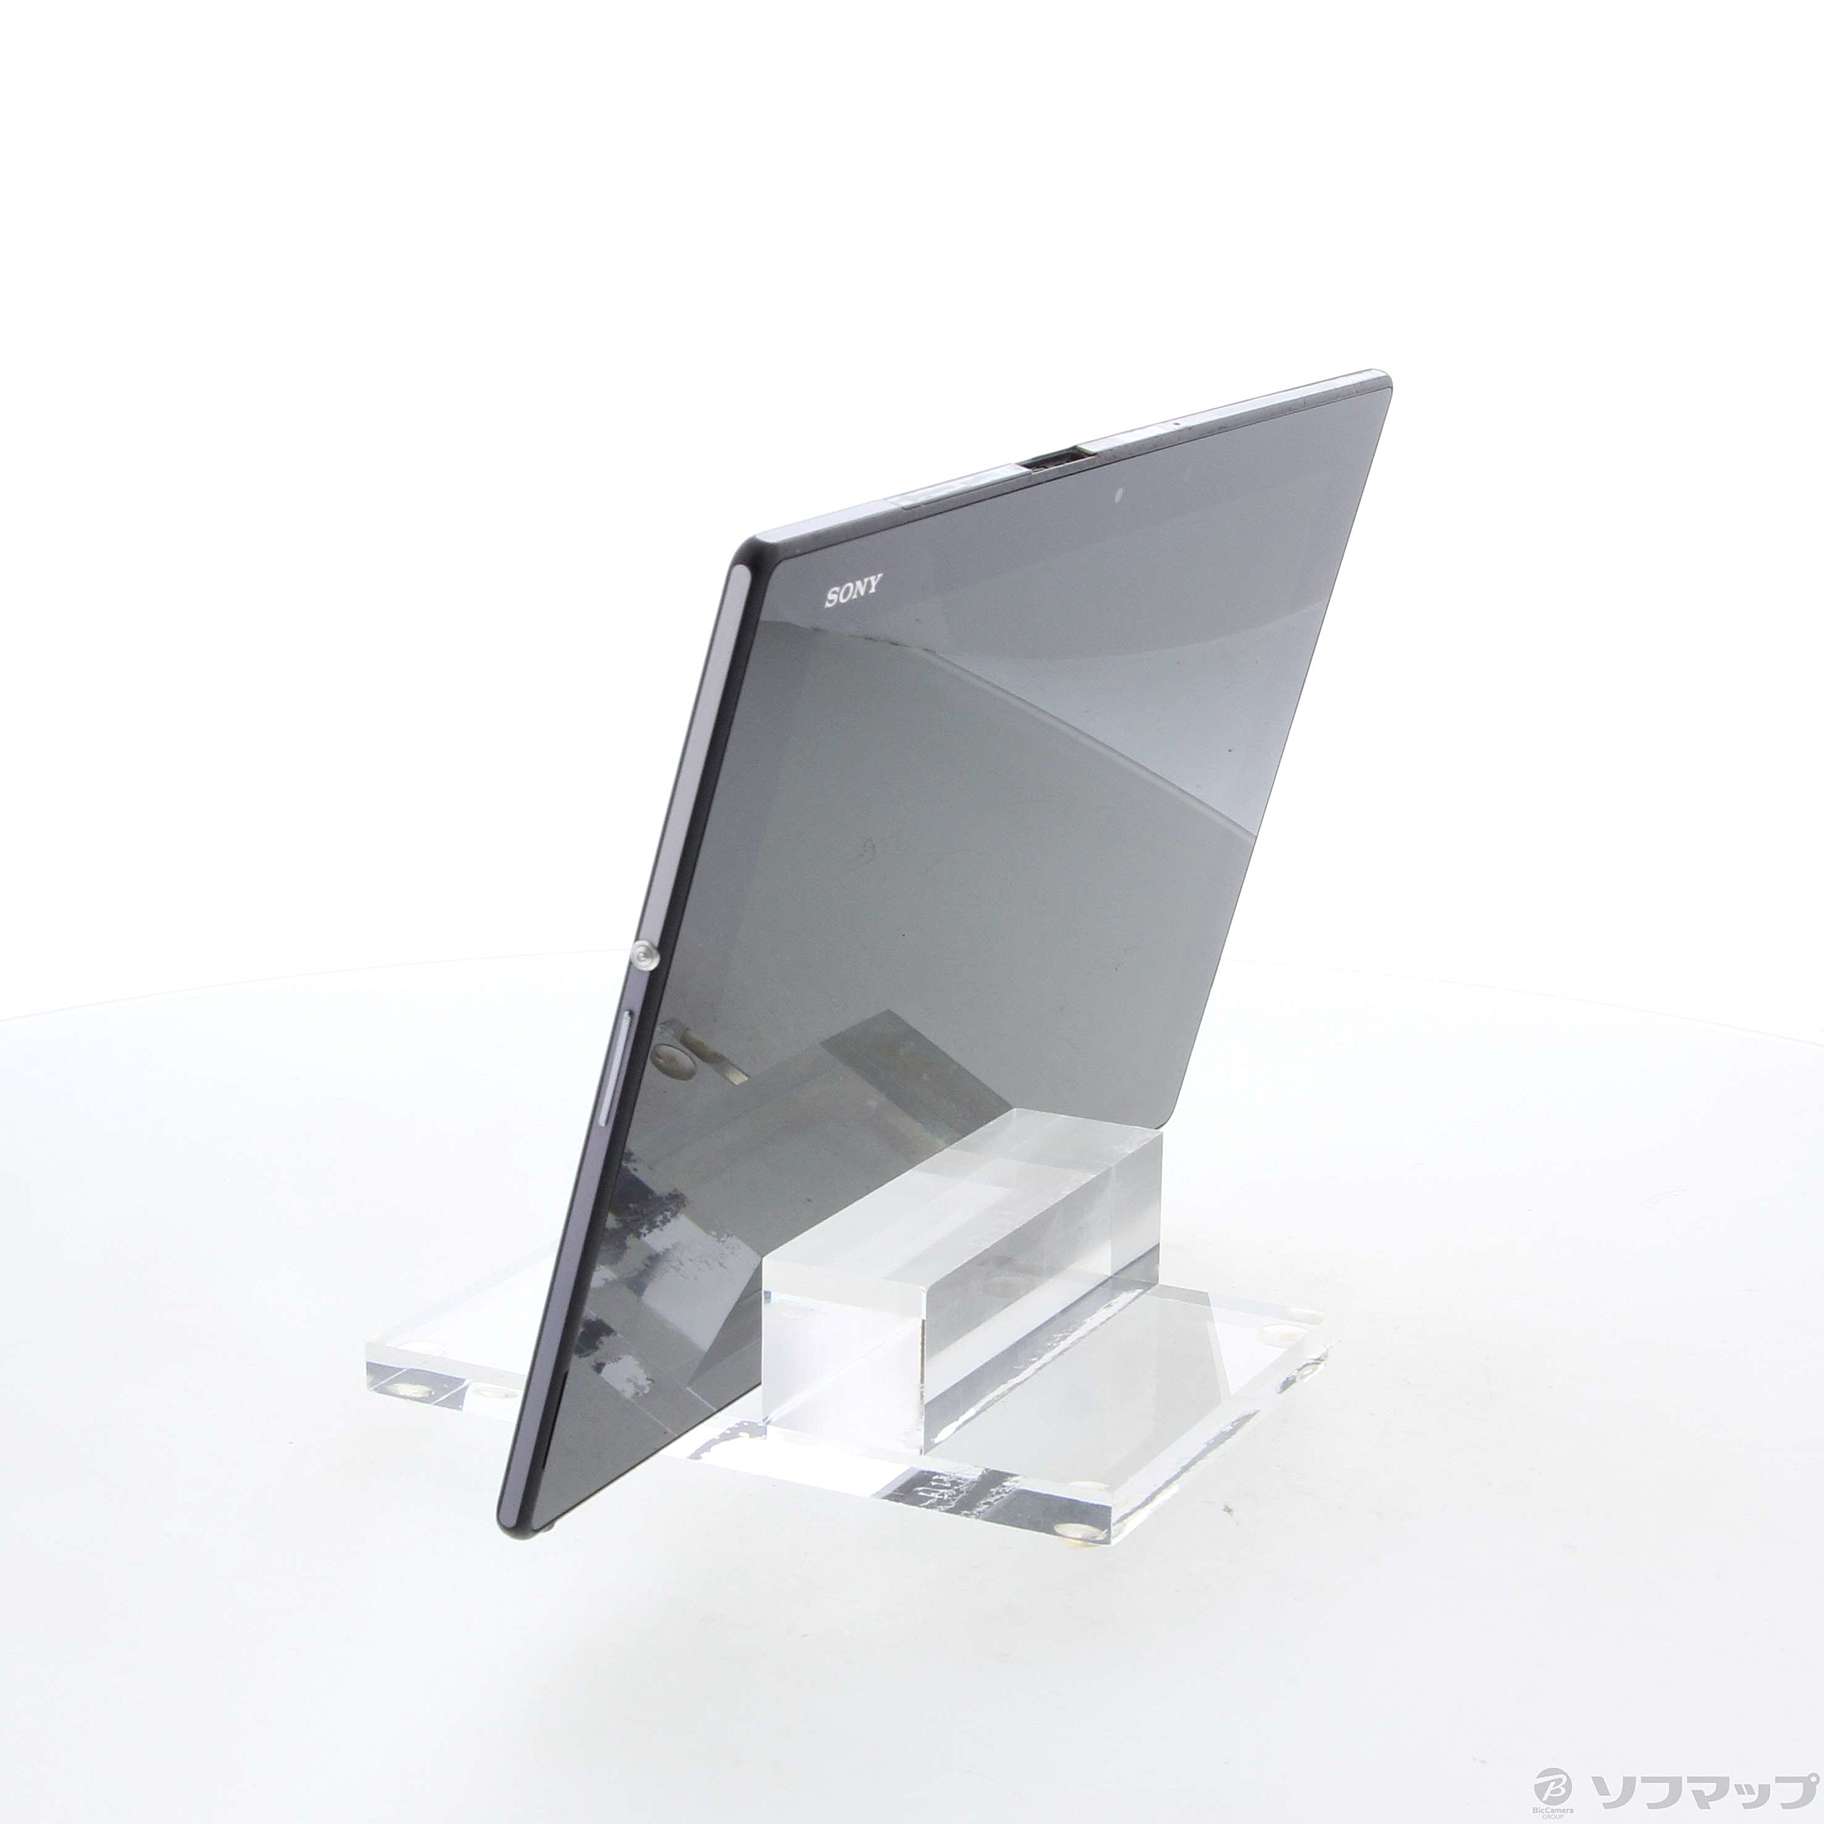 中古品(难有的)]Xperia Z2 Tablet 32GB黑色SGP512JP/B Wi-Fi|no邮购是